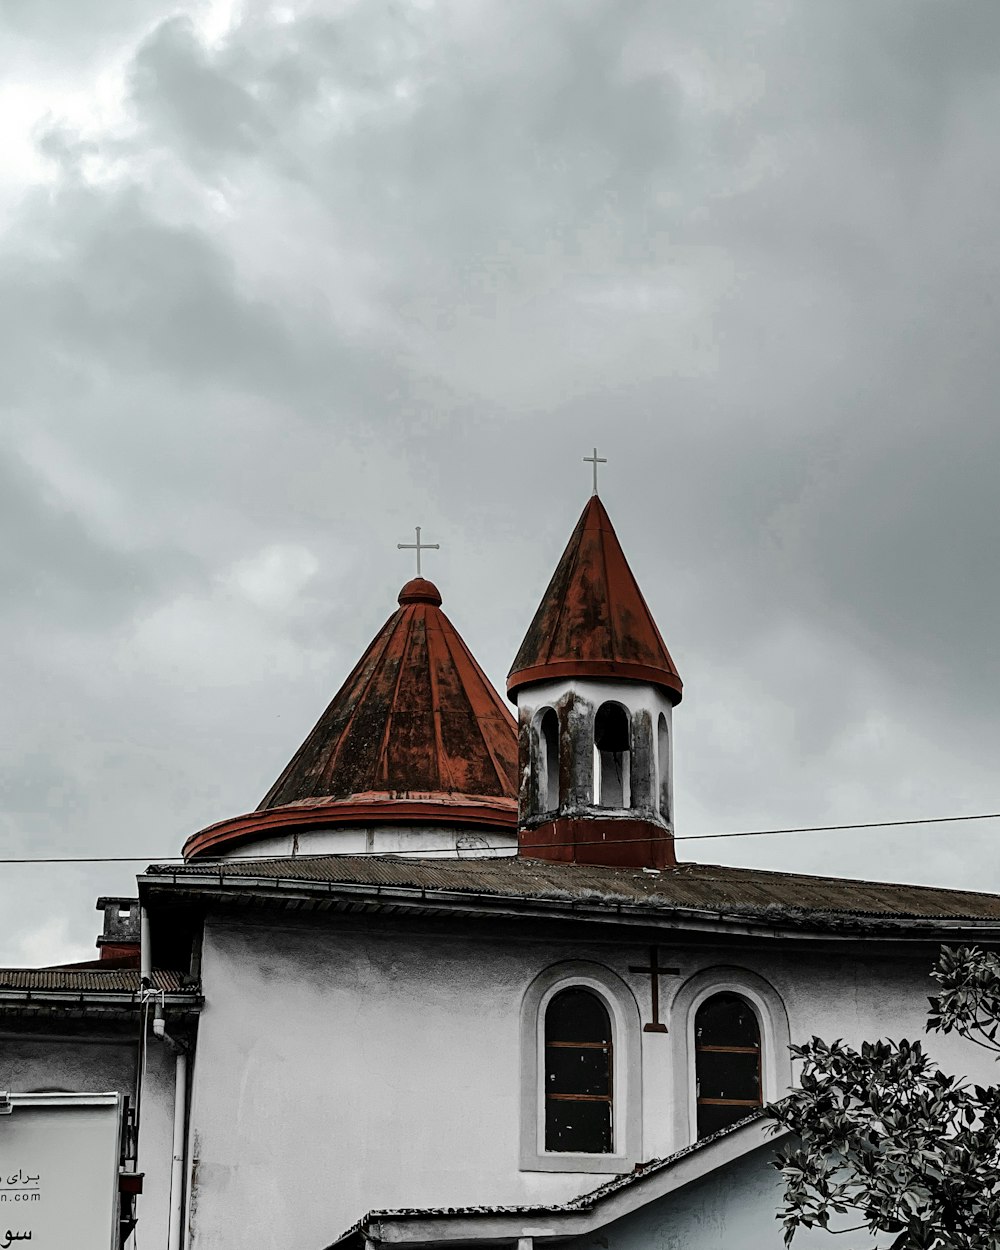 Un edificio blanco con un techo rojo y una torre del reloj